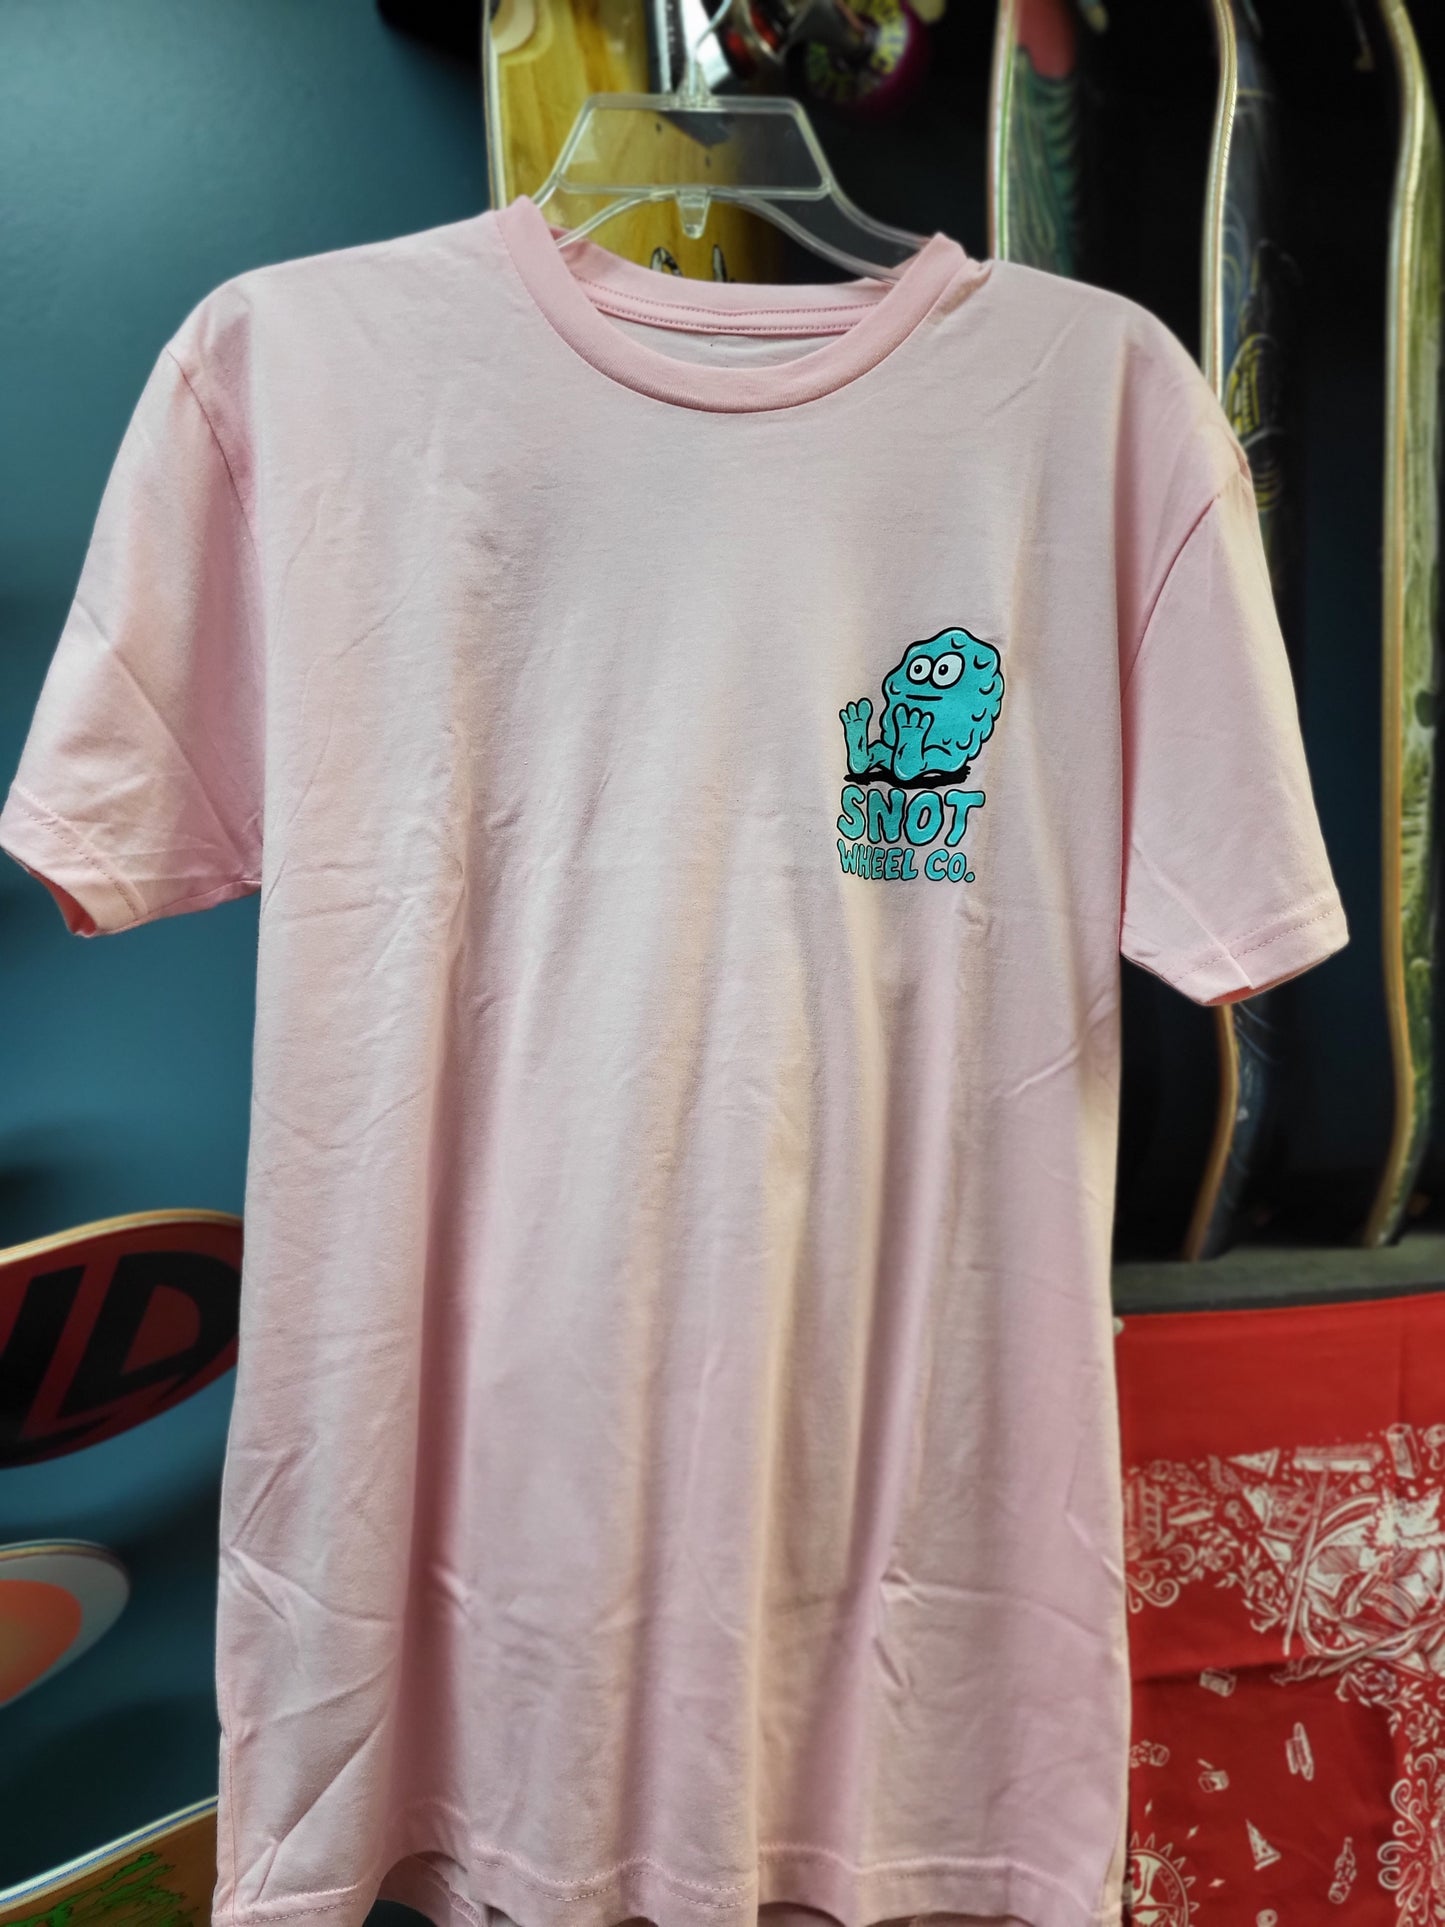 Snot Pink Booger Shirt